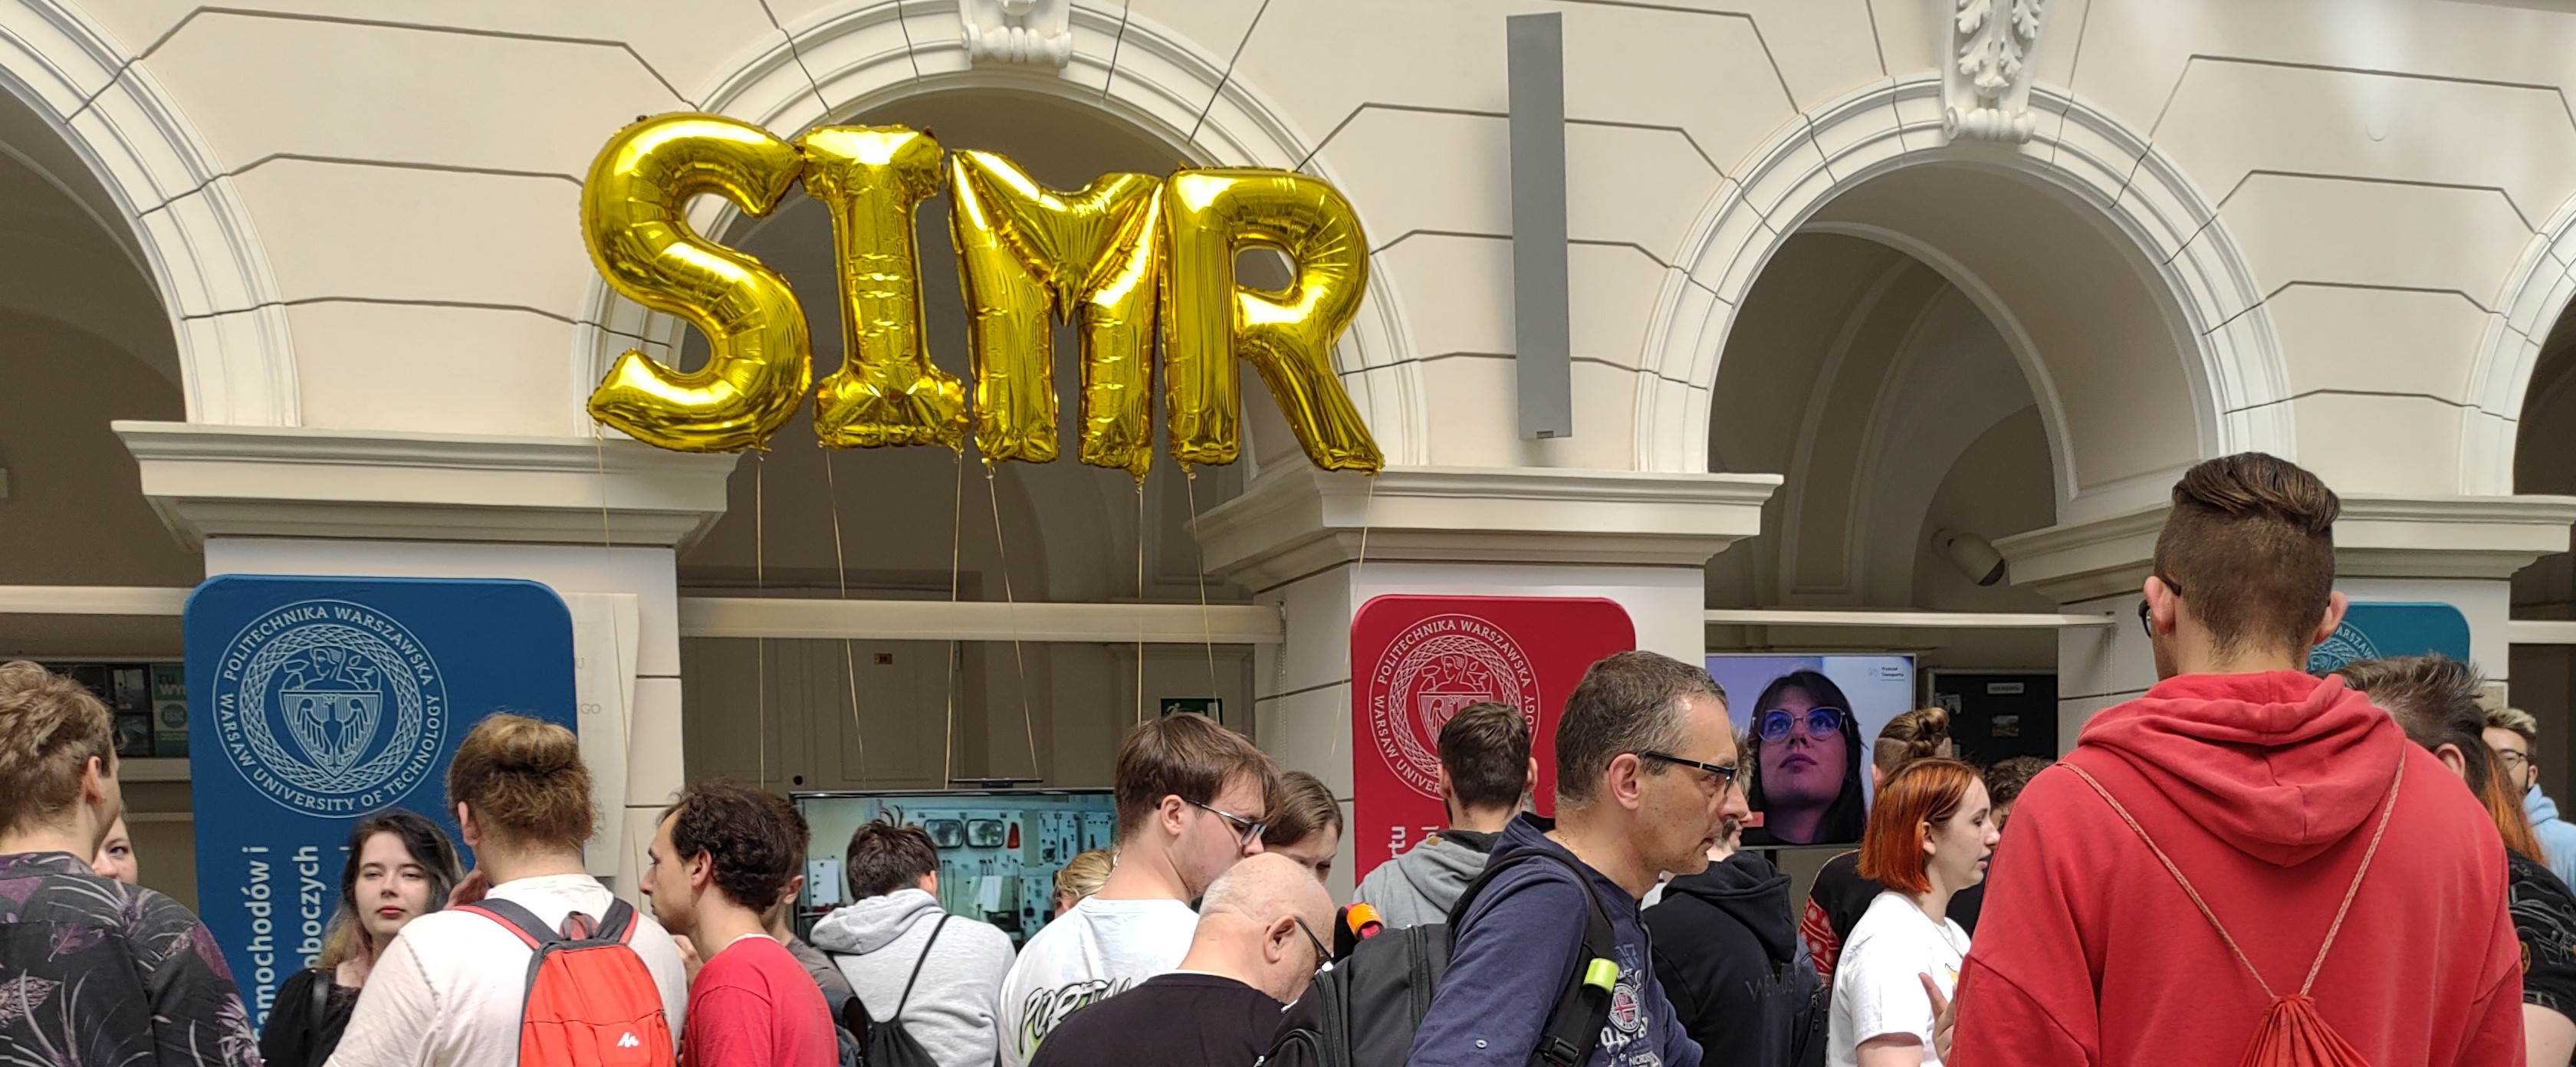 Tłum ludzi, nad nimi balony-literki układające się w napis "SIMR"